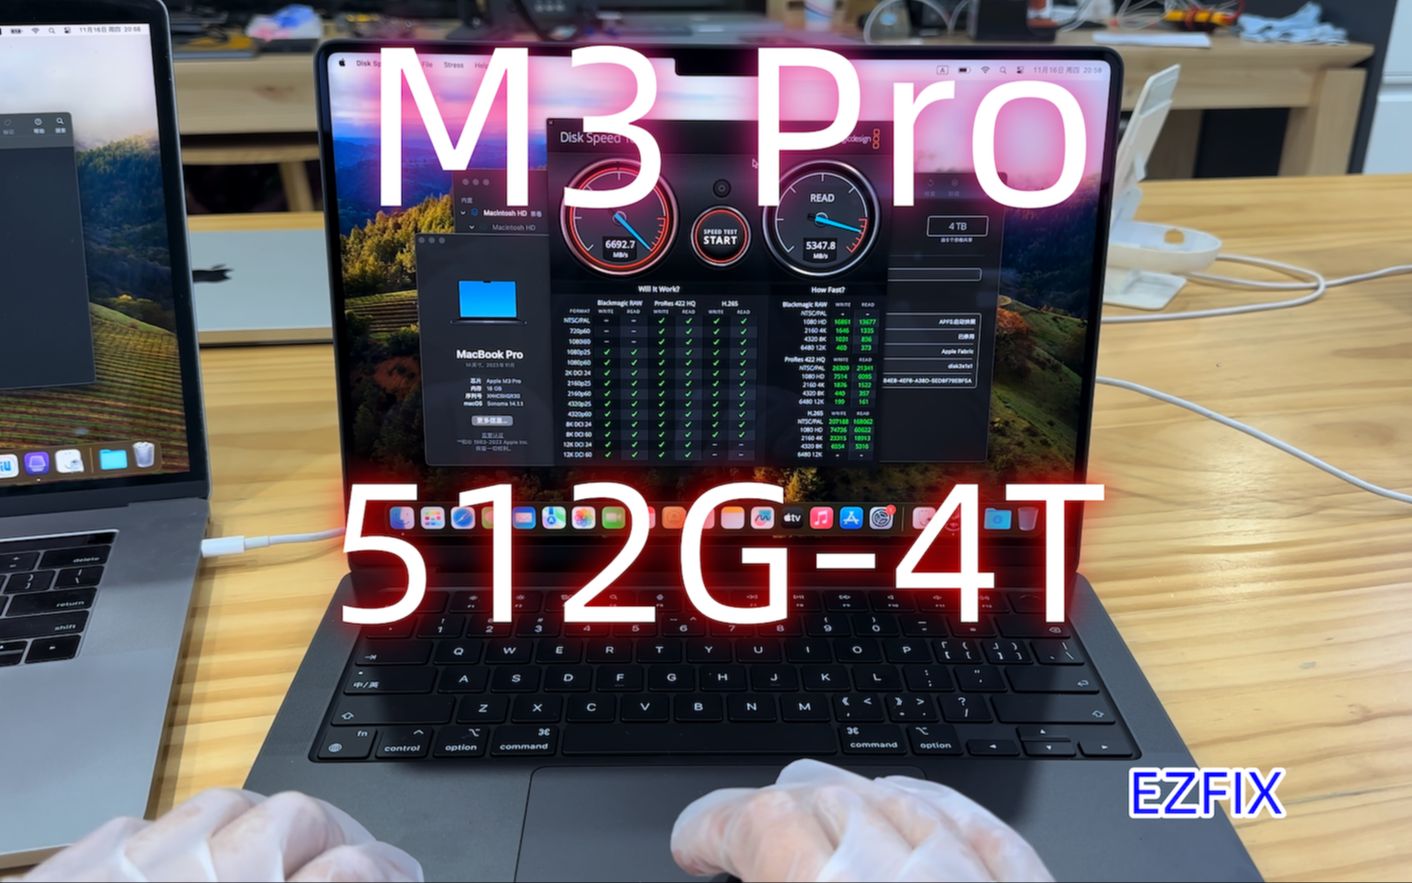 M3Pro MacBook Pro 扩容 硬盘 升级 512G-4T